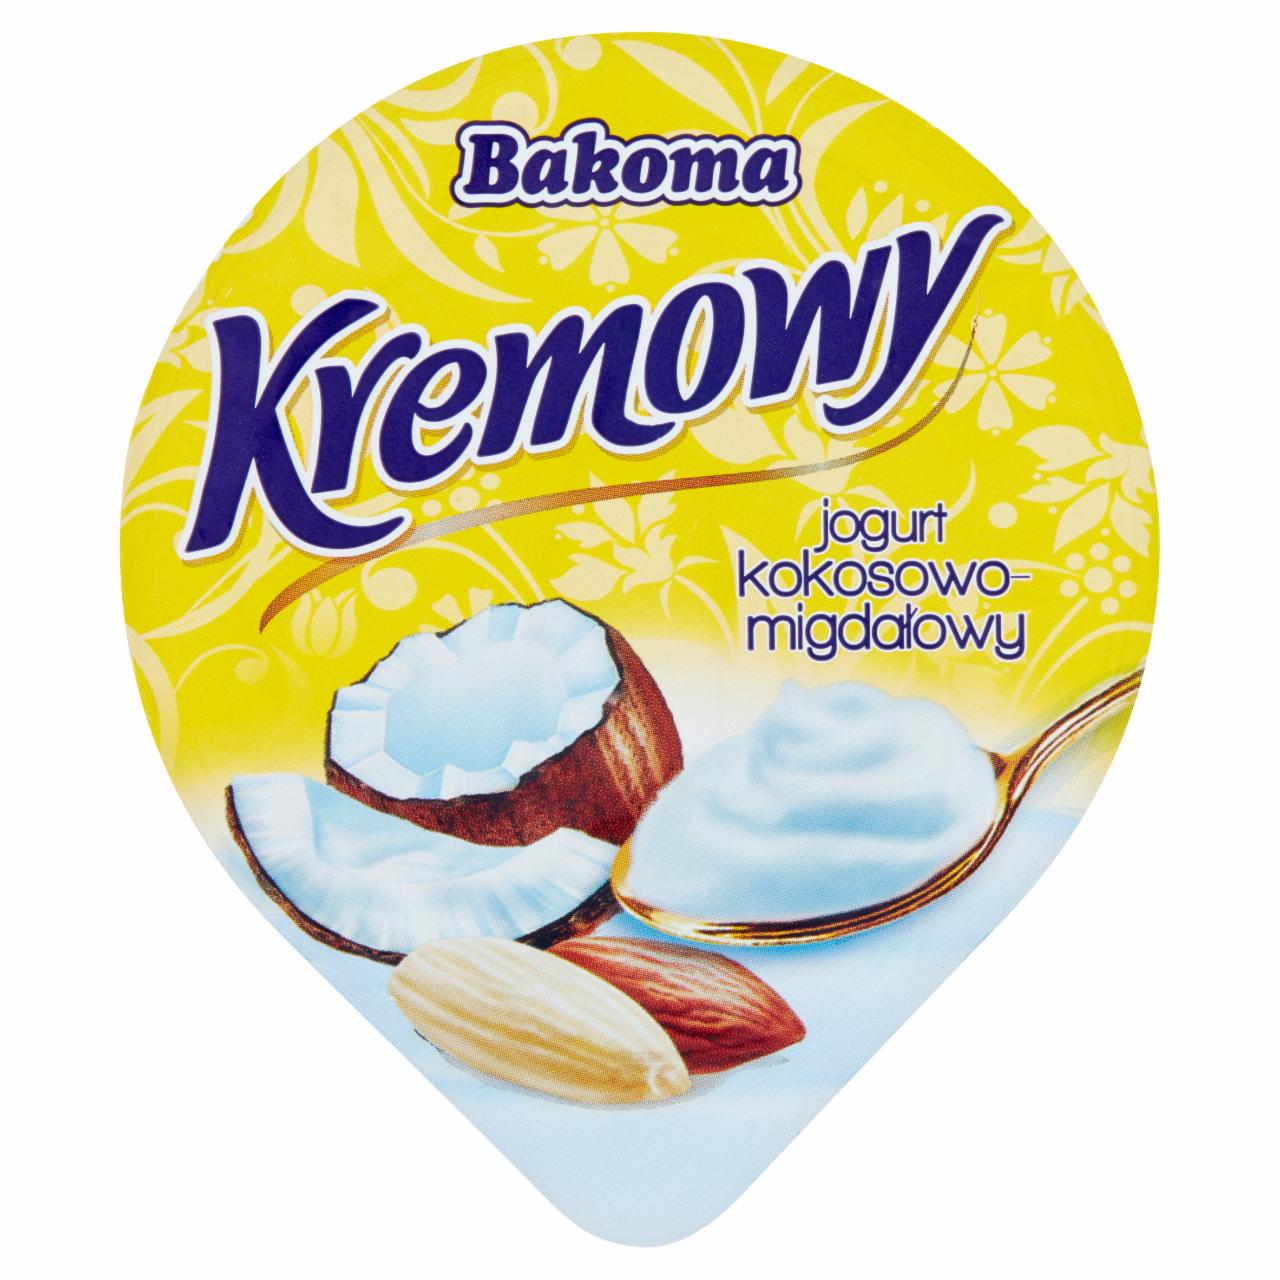 Zdjęcia - Bakoma Kremowy jogurt kokosowo-migdałowy 140 g